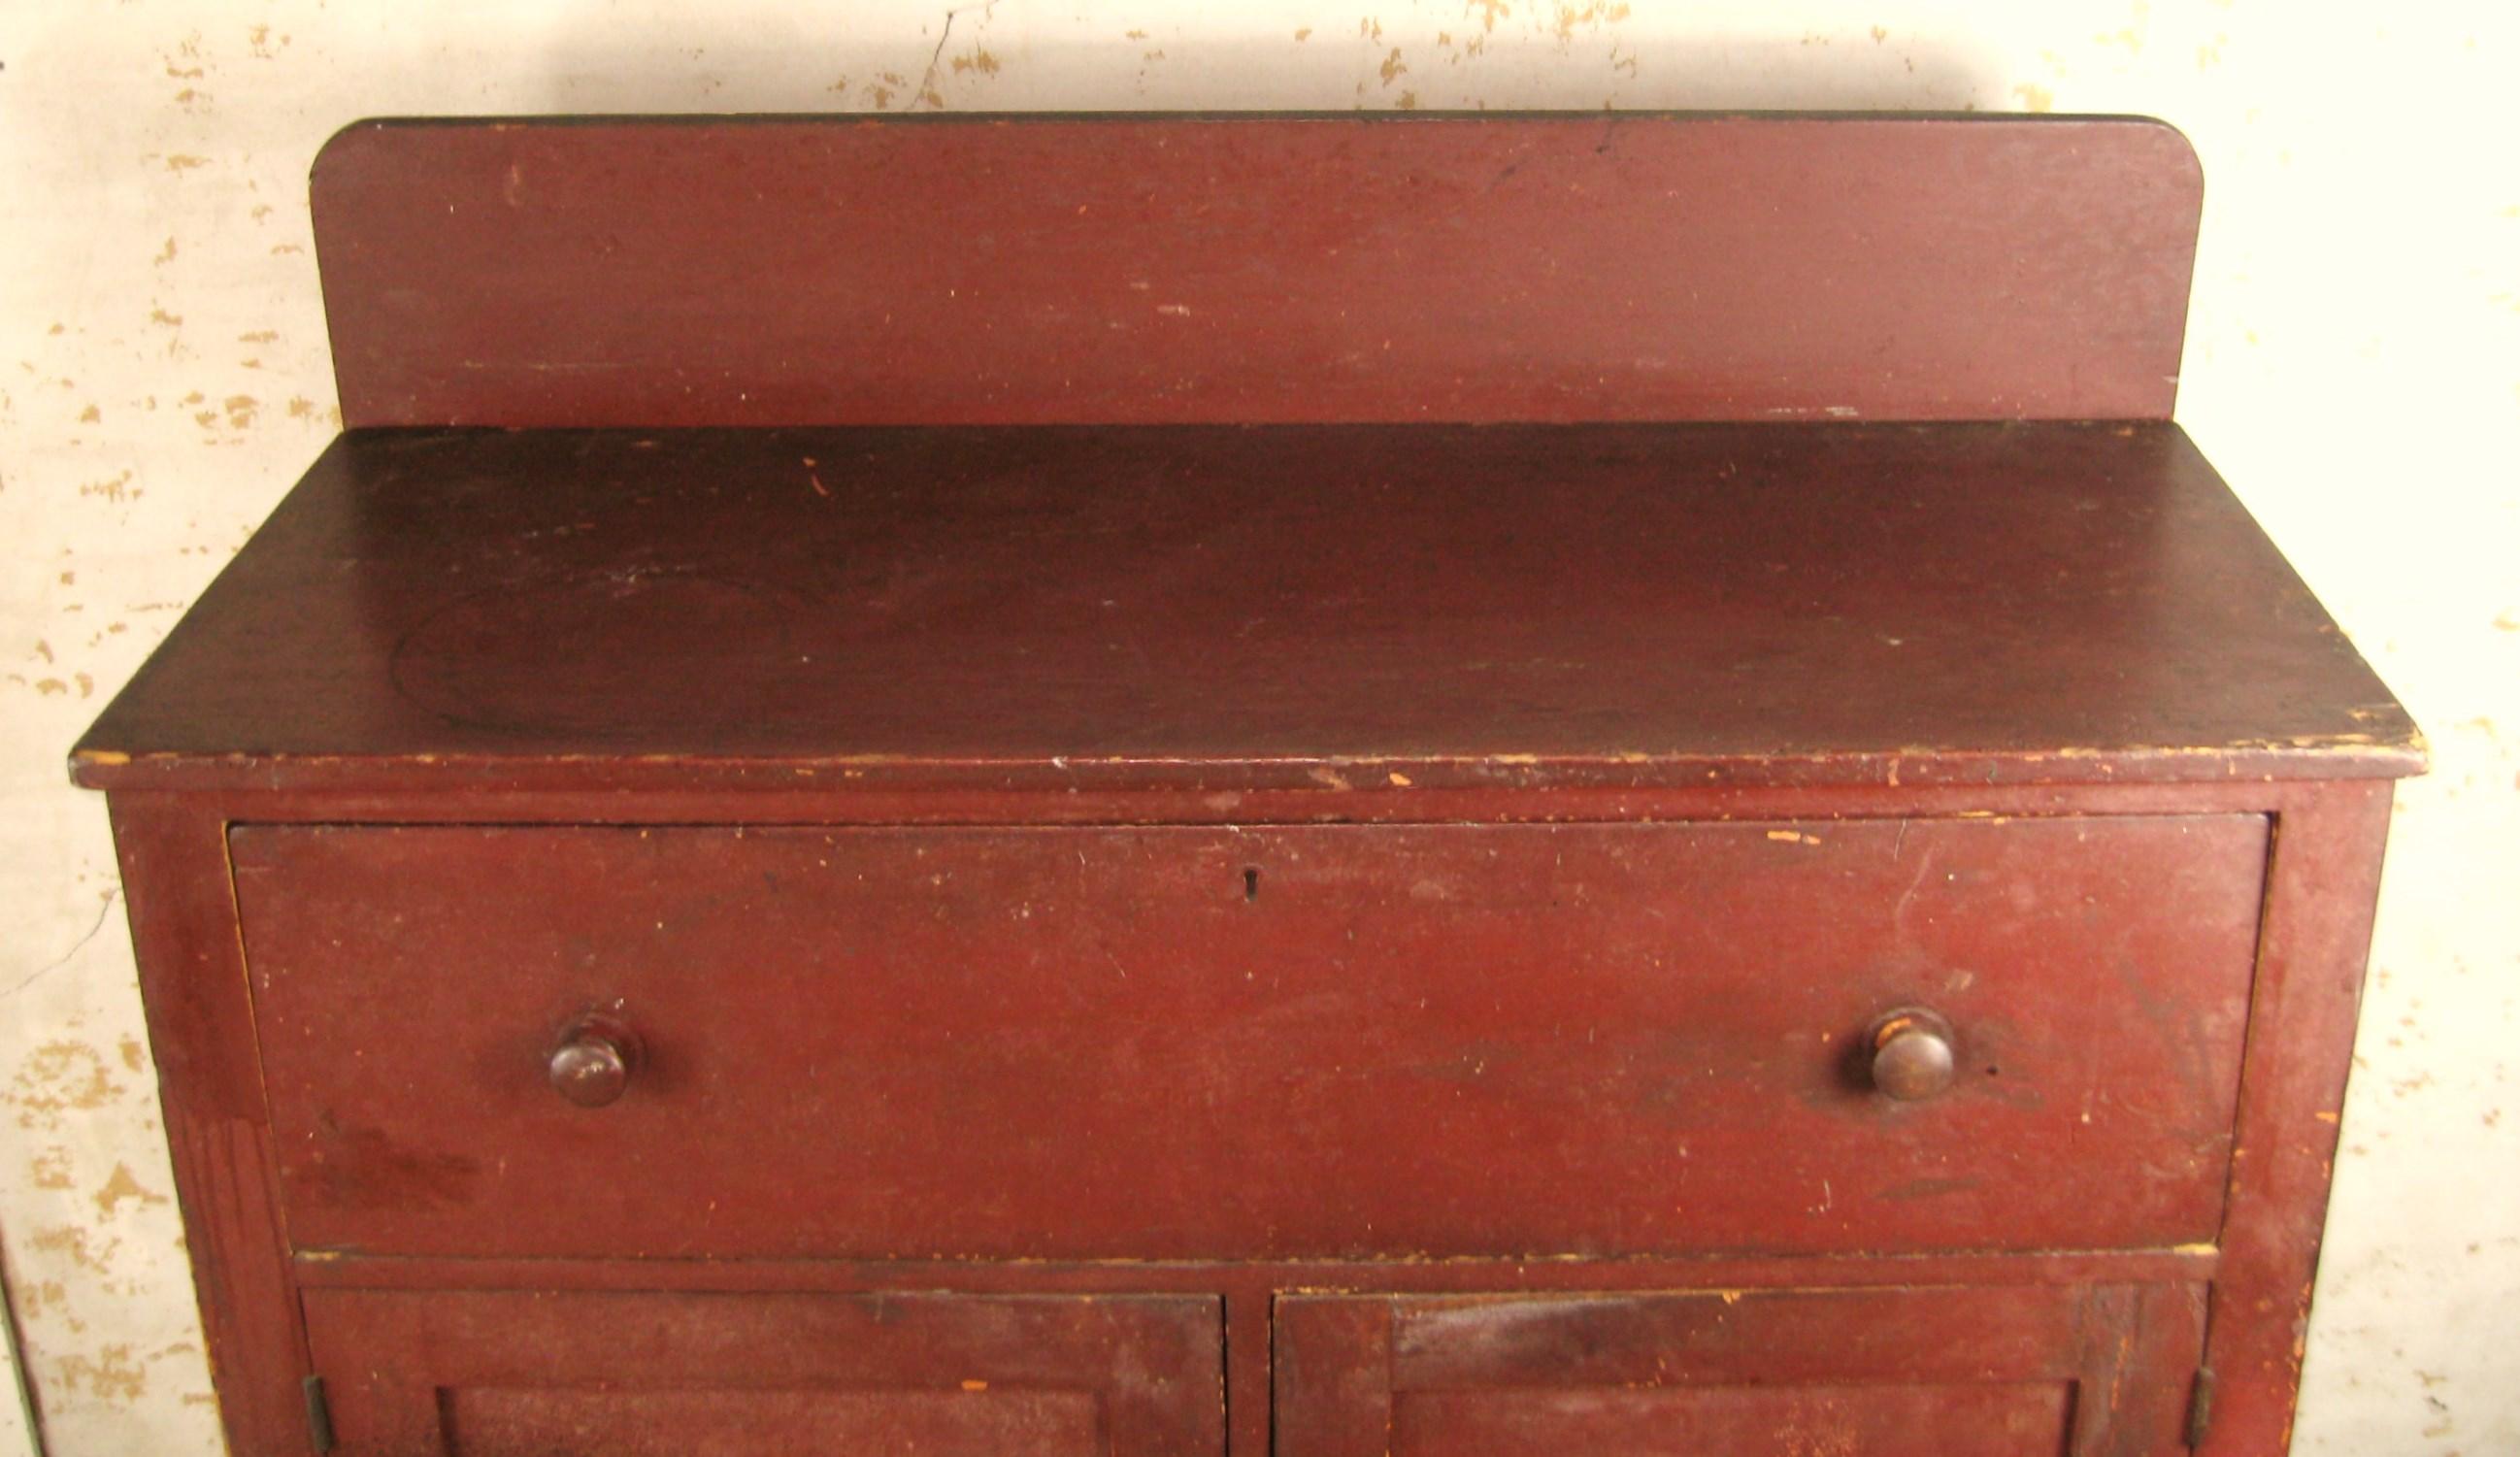 Armoire à confiture primitive du milieu du 19e siècle, peinte en rouge, un tiroir sur deux portes avec une galerie. Il est doté de pieds avant tournés, de charnières et d'étagères. Il a subi quelques réparations au cours de son existence, une porte